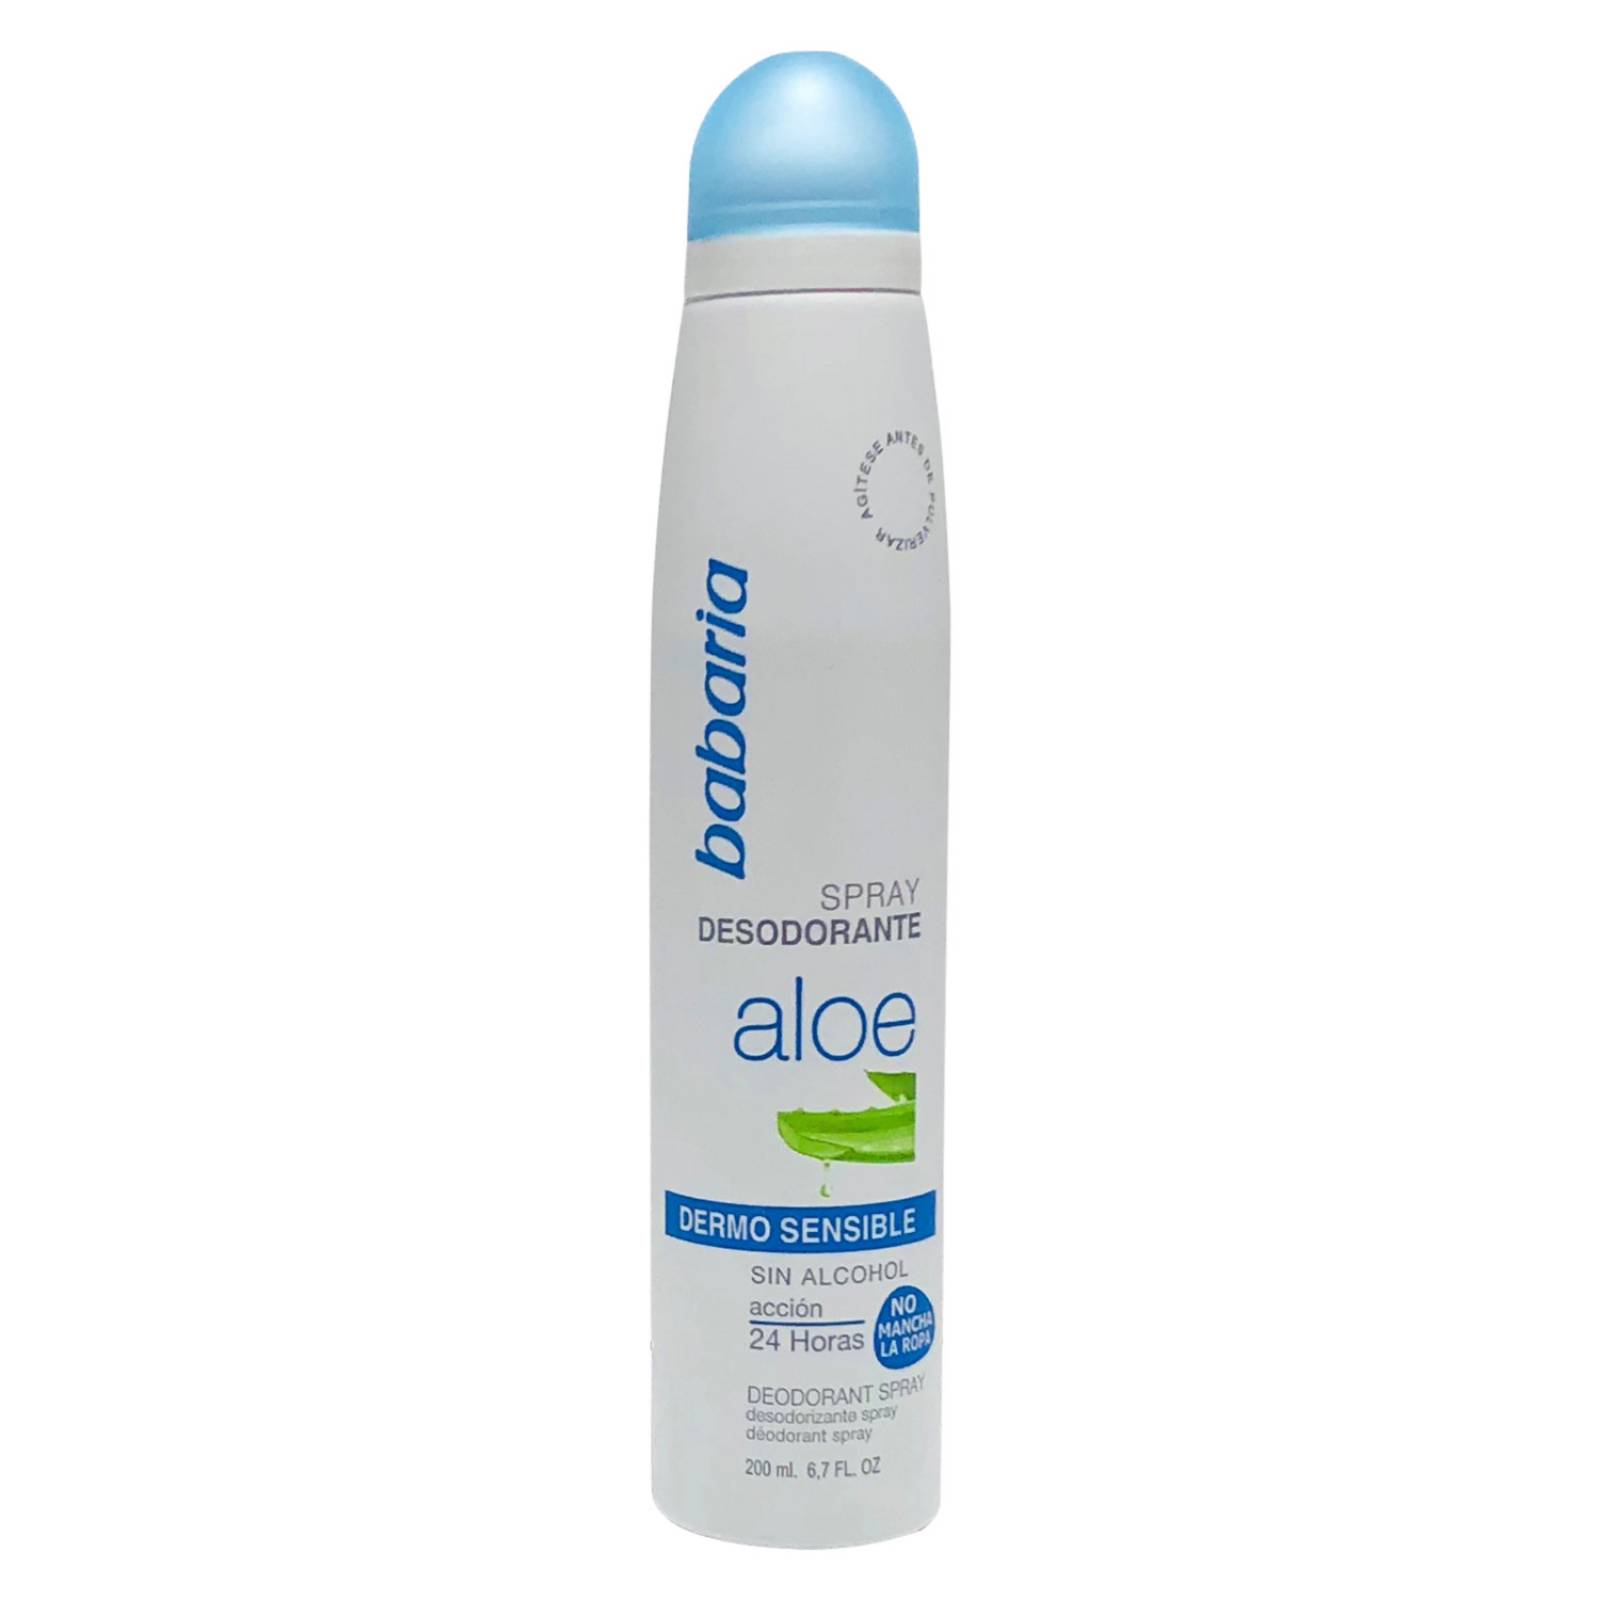 Desodorante Spray Aloe dermo sensible protección 48 horas 200 ml